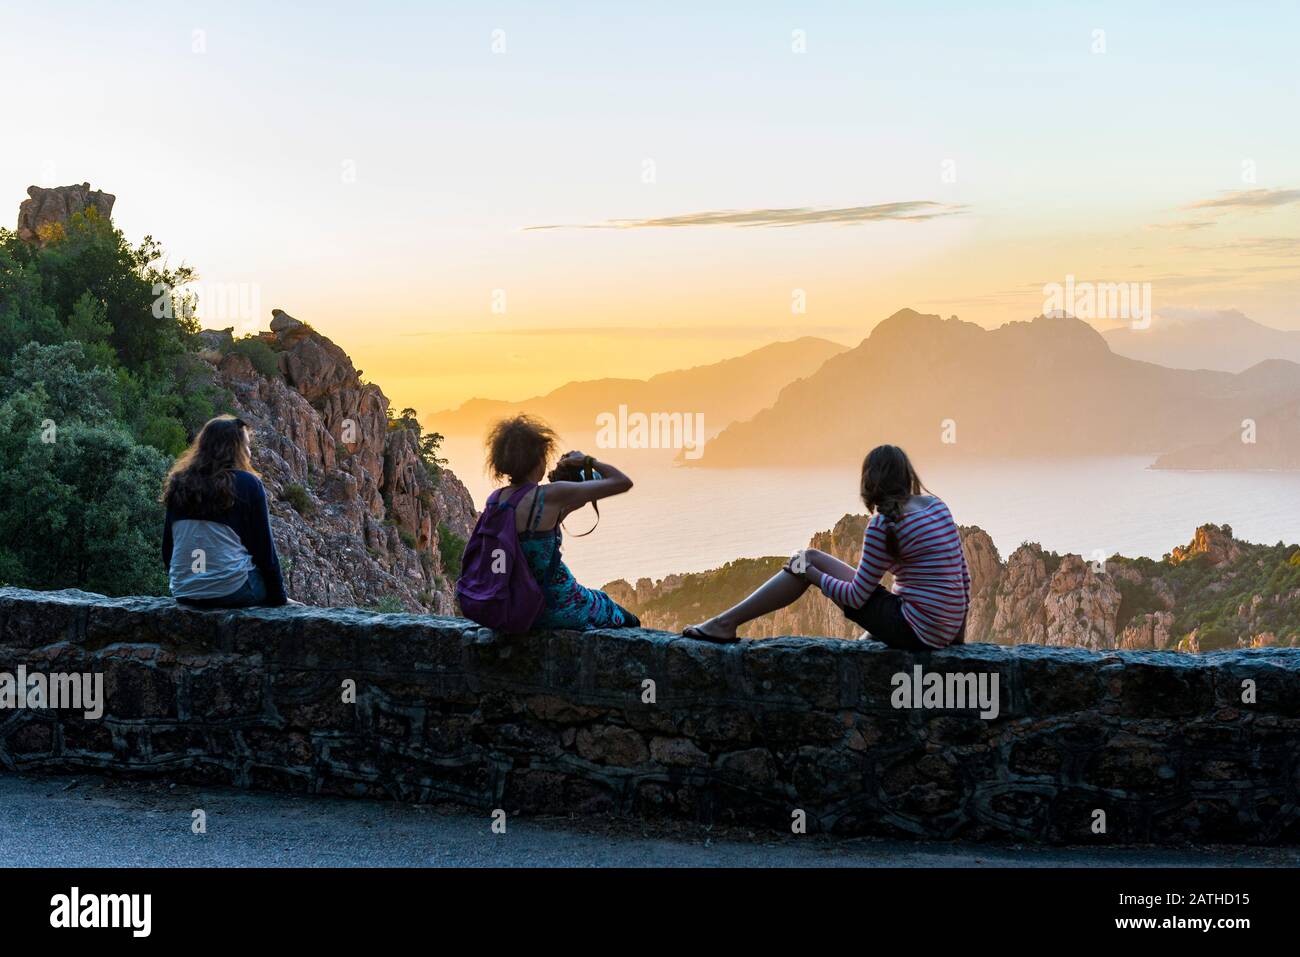 France. Corse. Corsica. Calanques de Piana. Au coucher de soleil, trois touristes admirent le panorama devant elles. : la mer Méditerranée et les roch Stock Photo